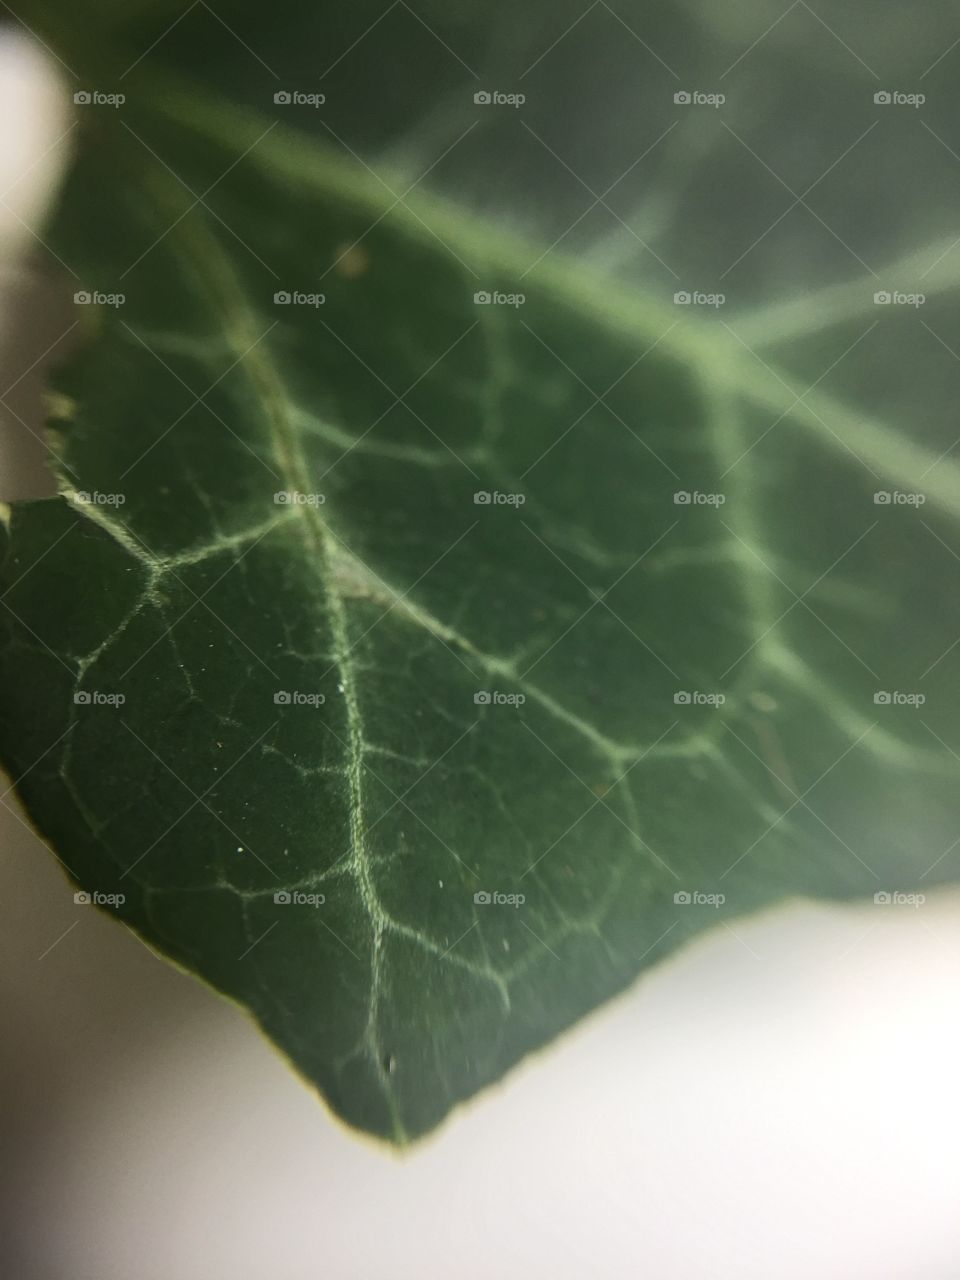 Ivy Leaf in Macro